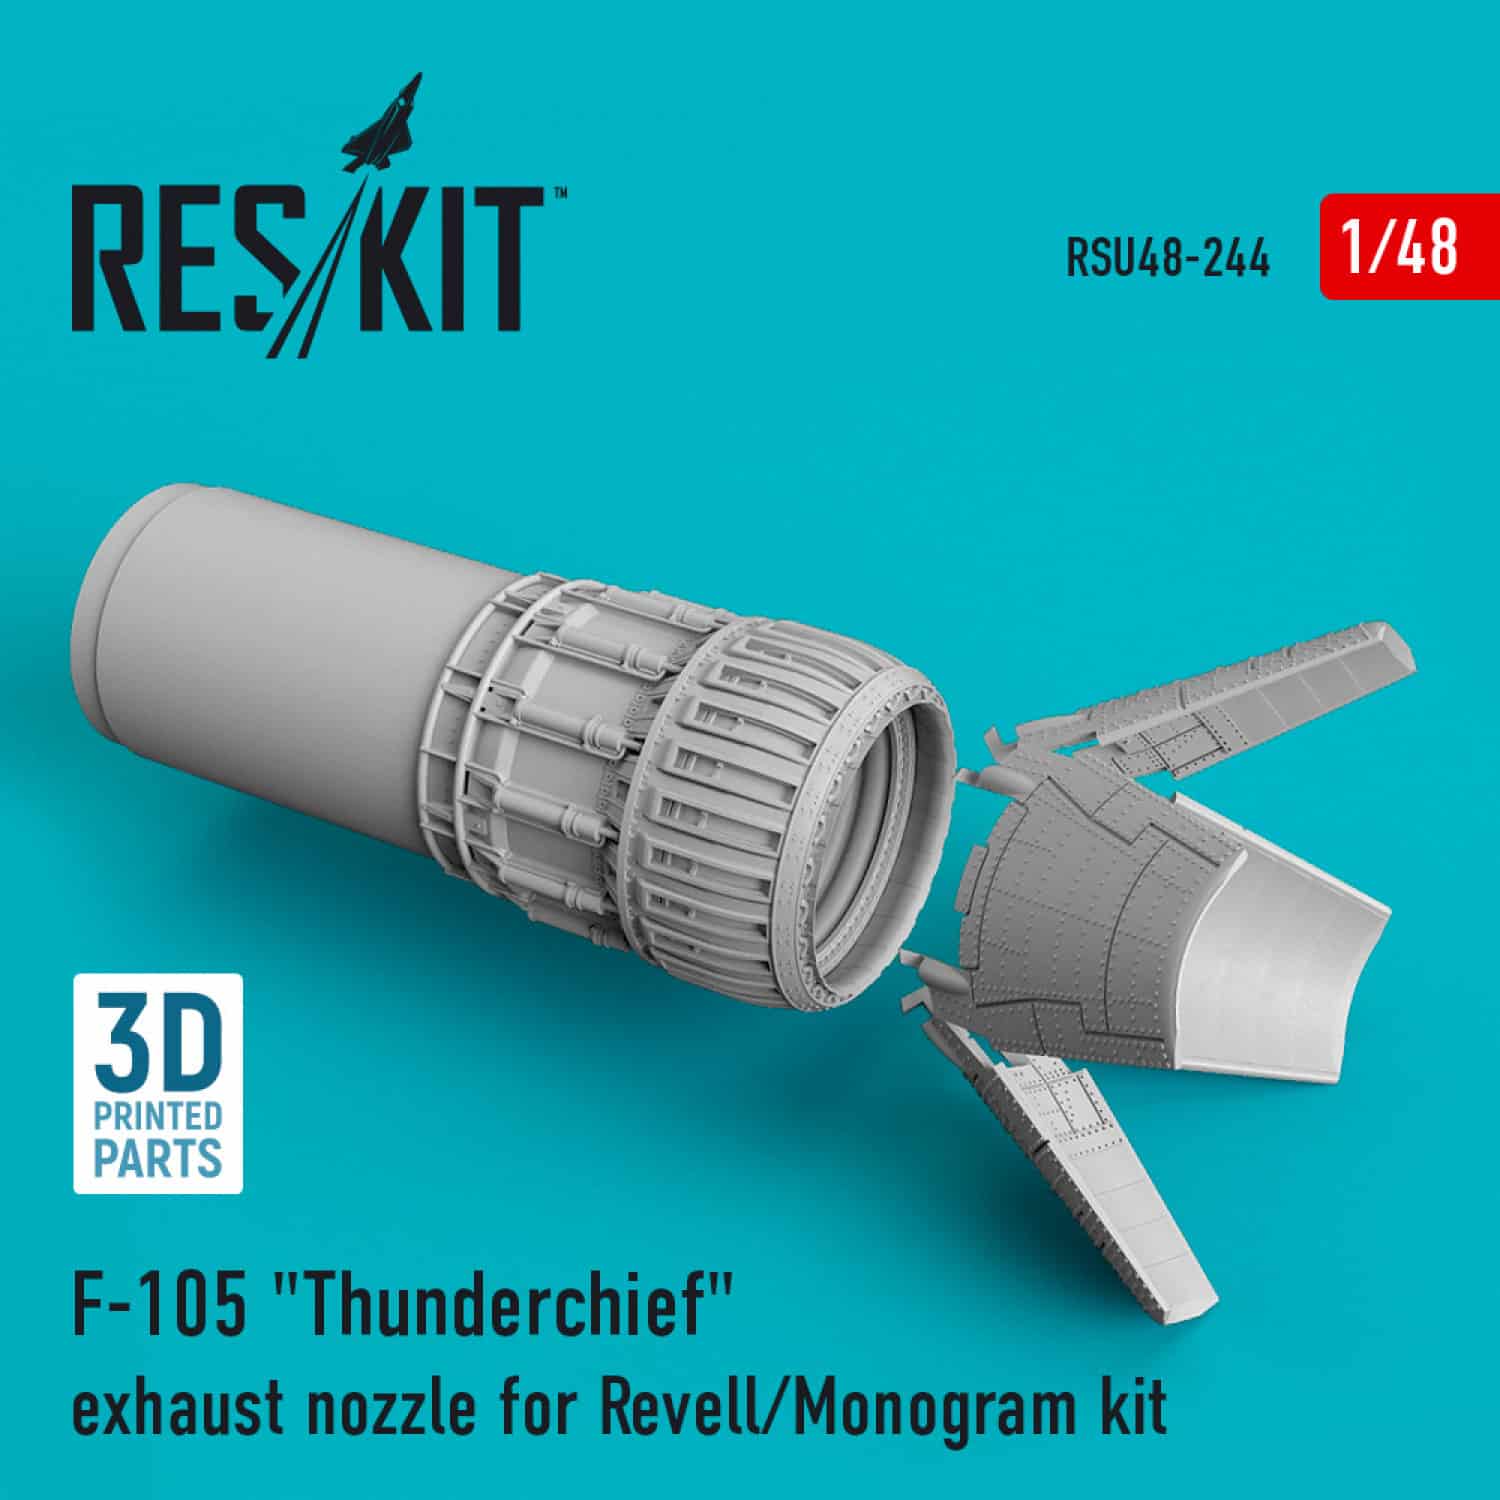 Reskit 148 F-105 Thunderchief exhaust nozzle for Revell-Monogram kit